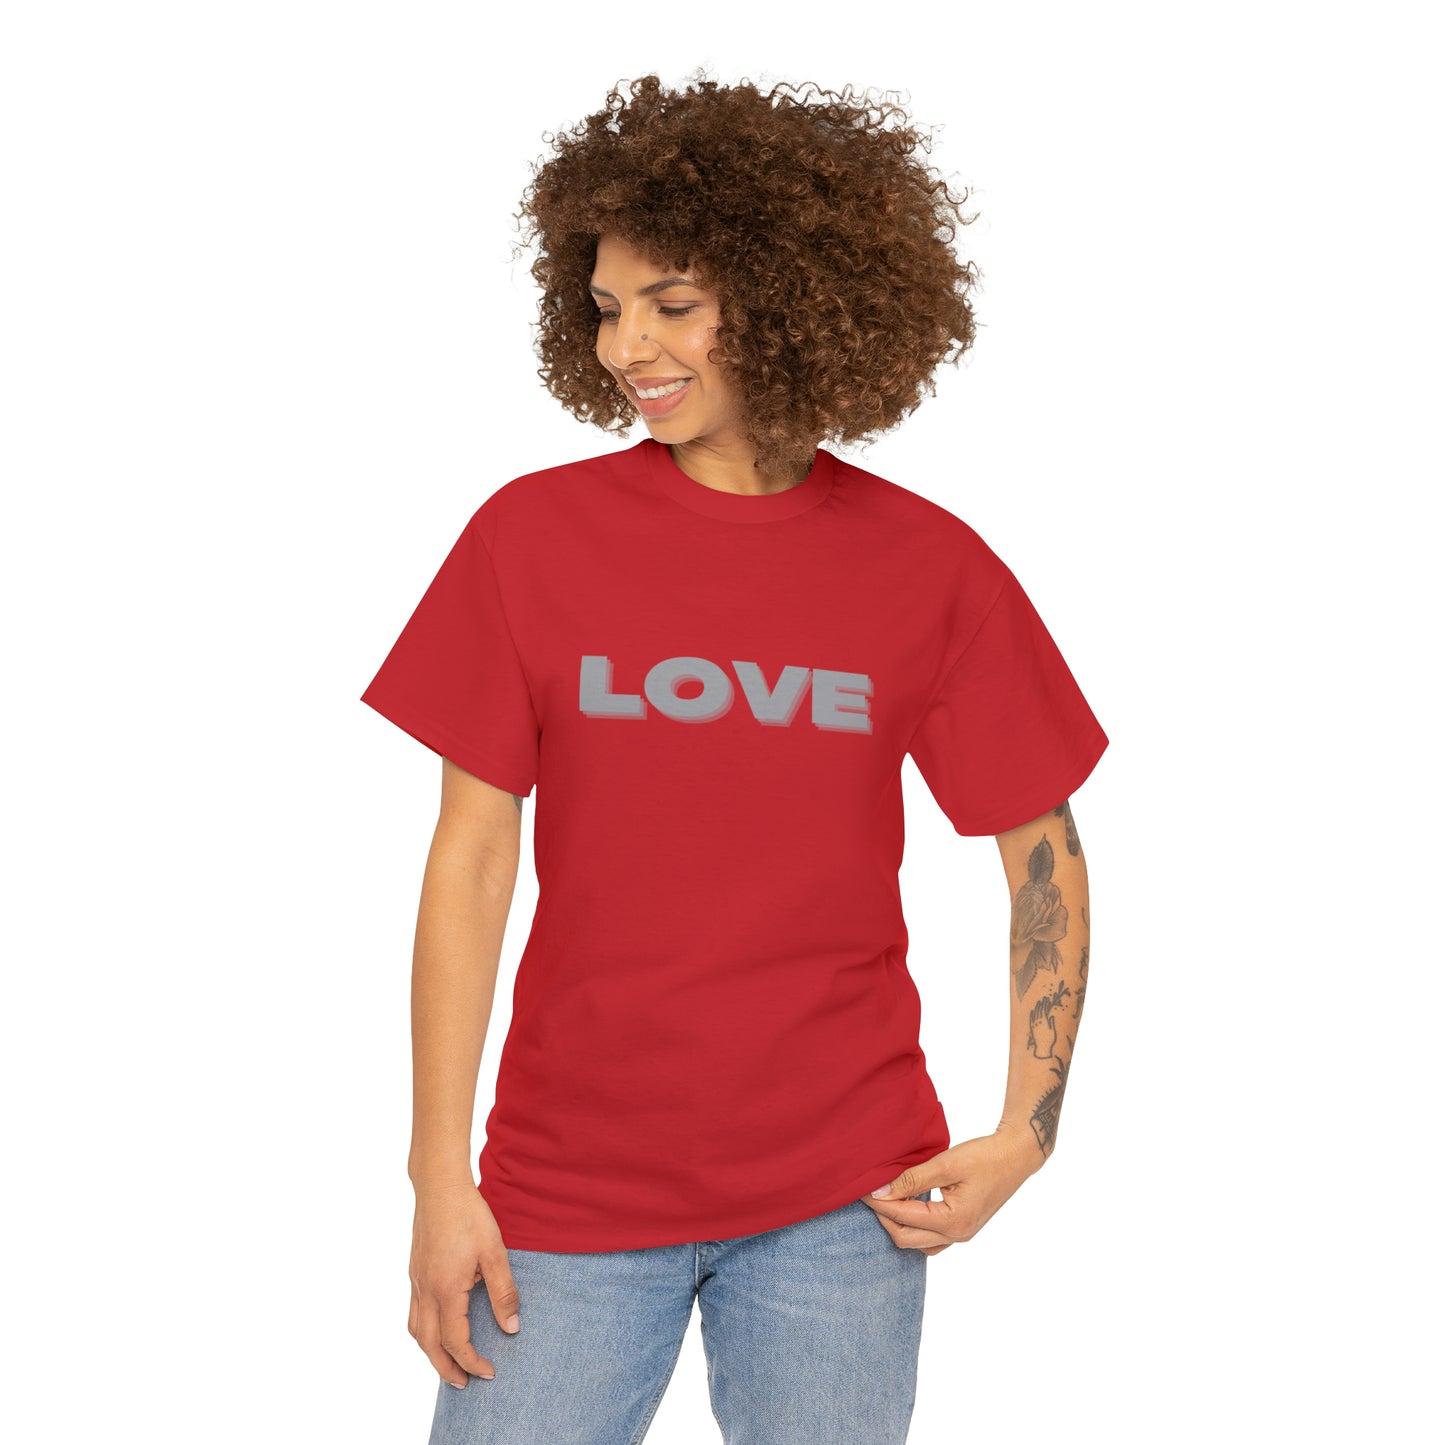 LOVE Motivational T-Shirt, Inspirational Shirt, Love Top